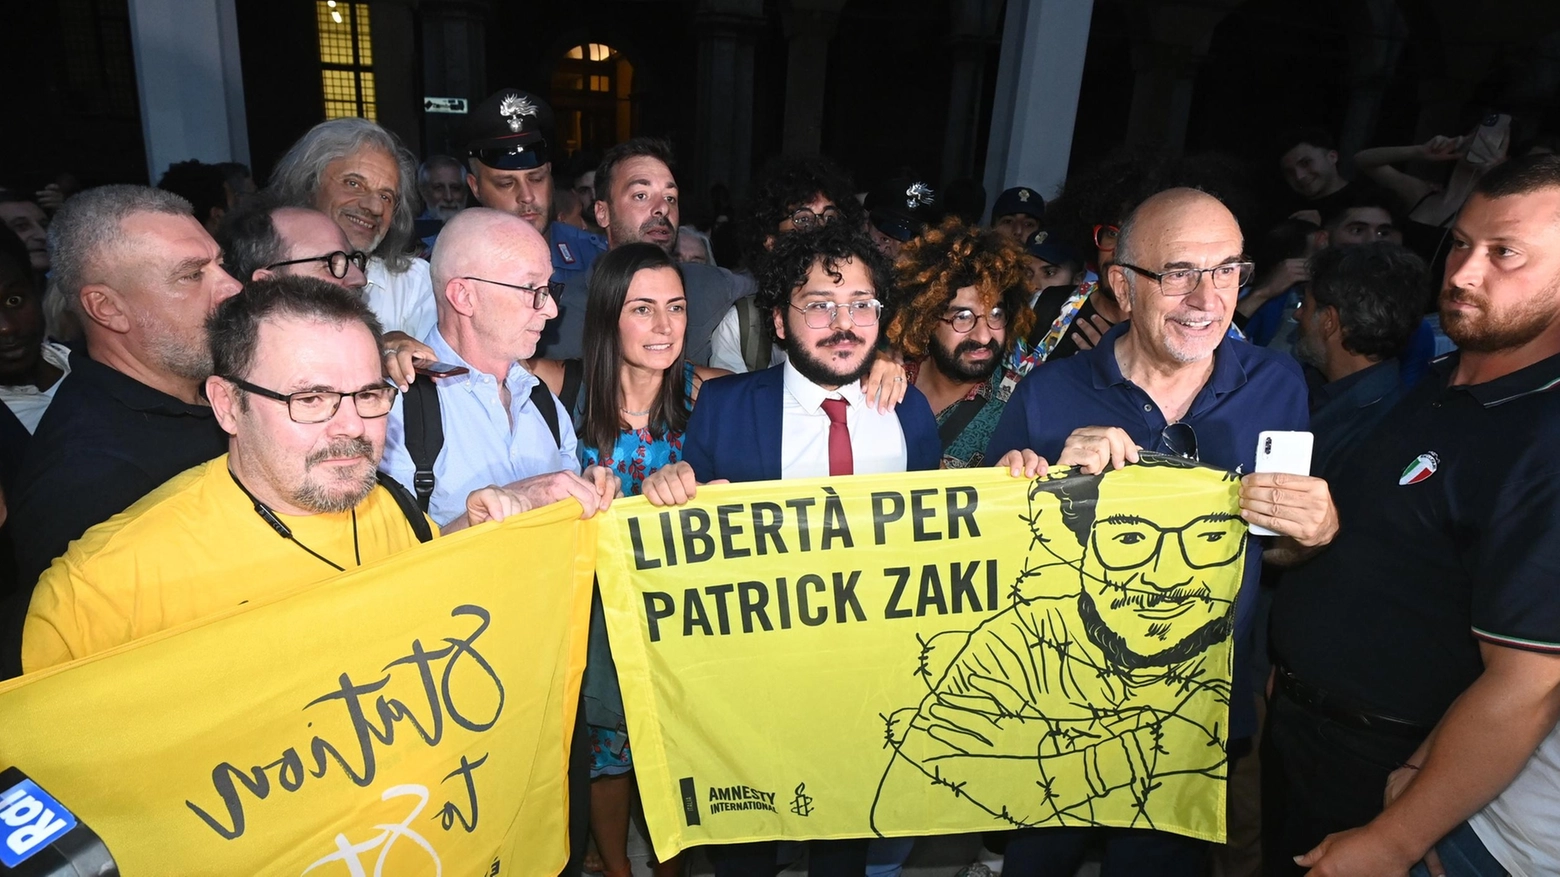 Zaki ringrazia la sua Bologna  "Adesso giustizia per Regeni"  Migliaia in piazza a festeggiarlo